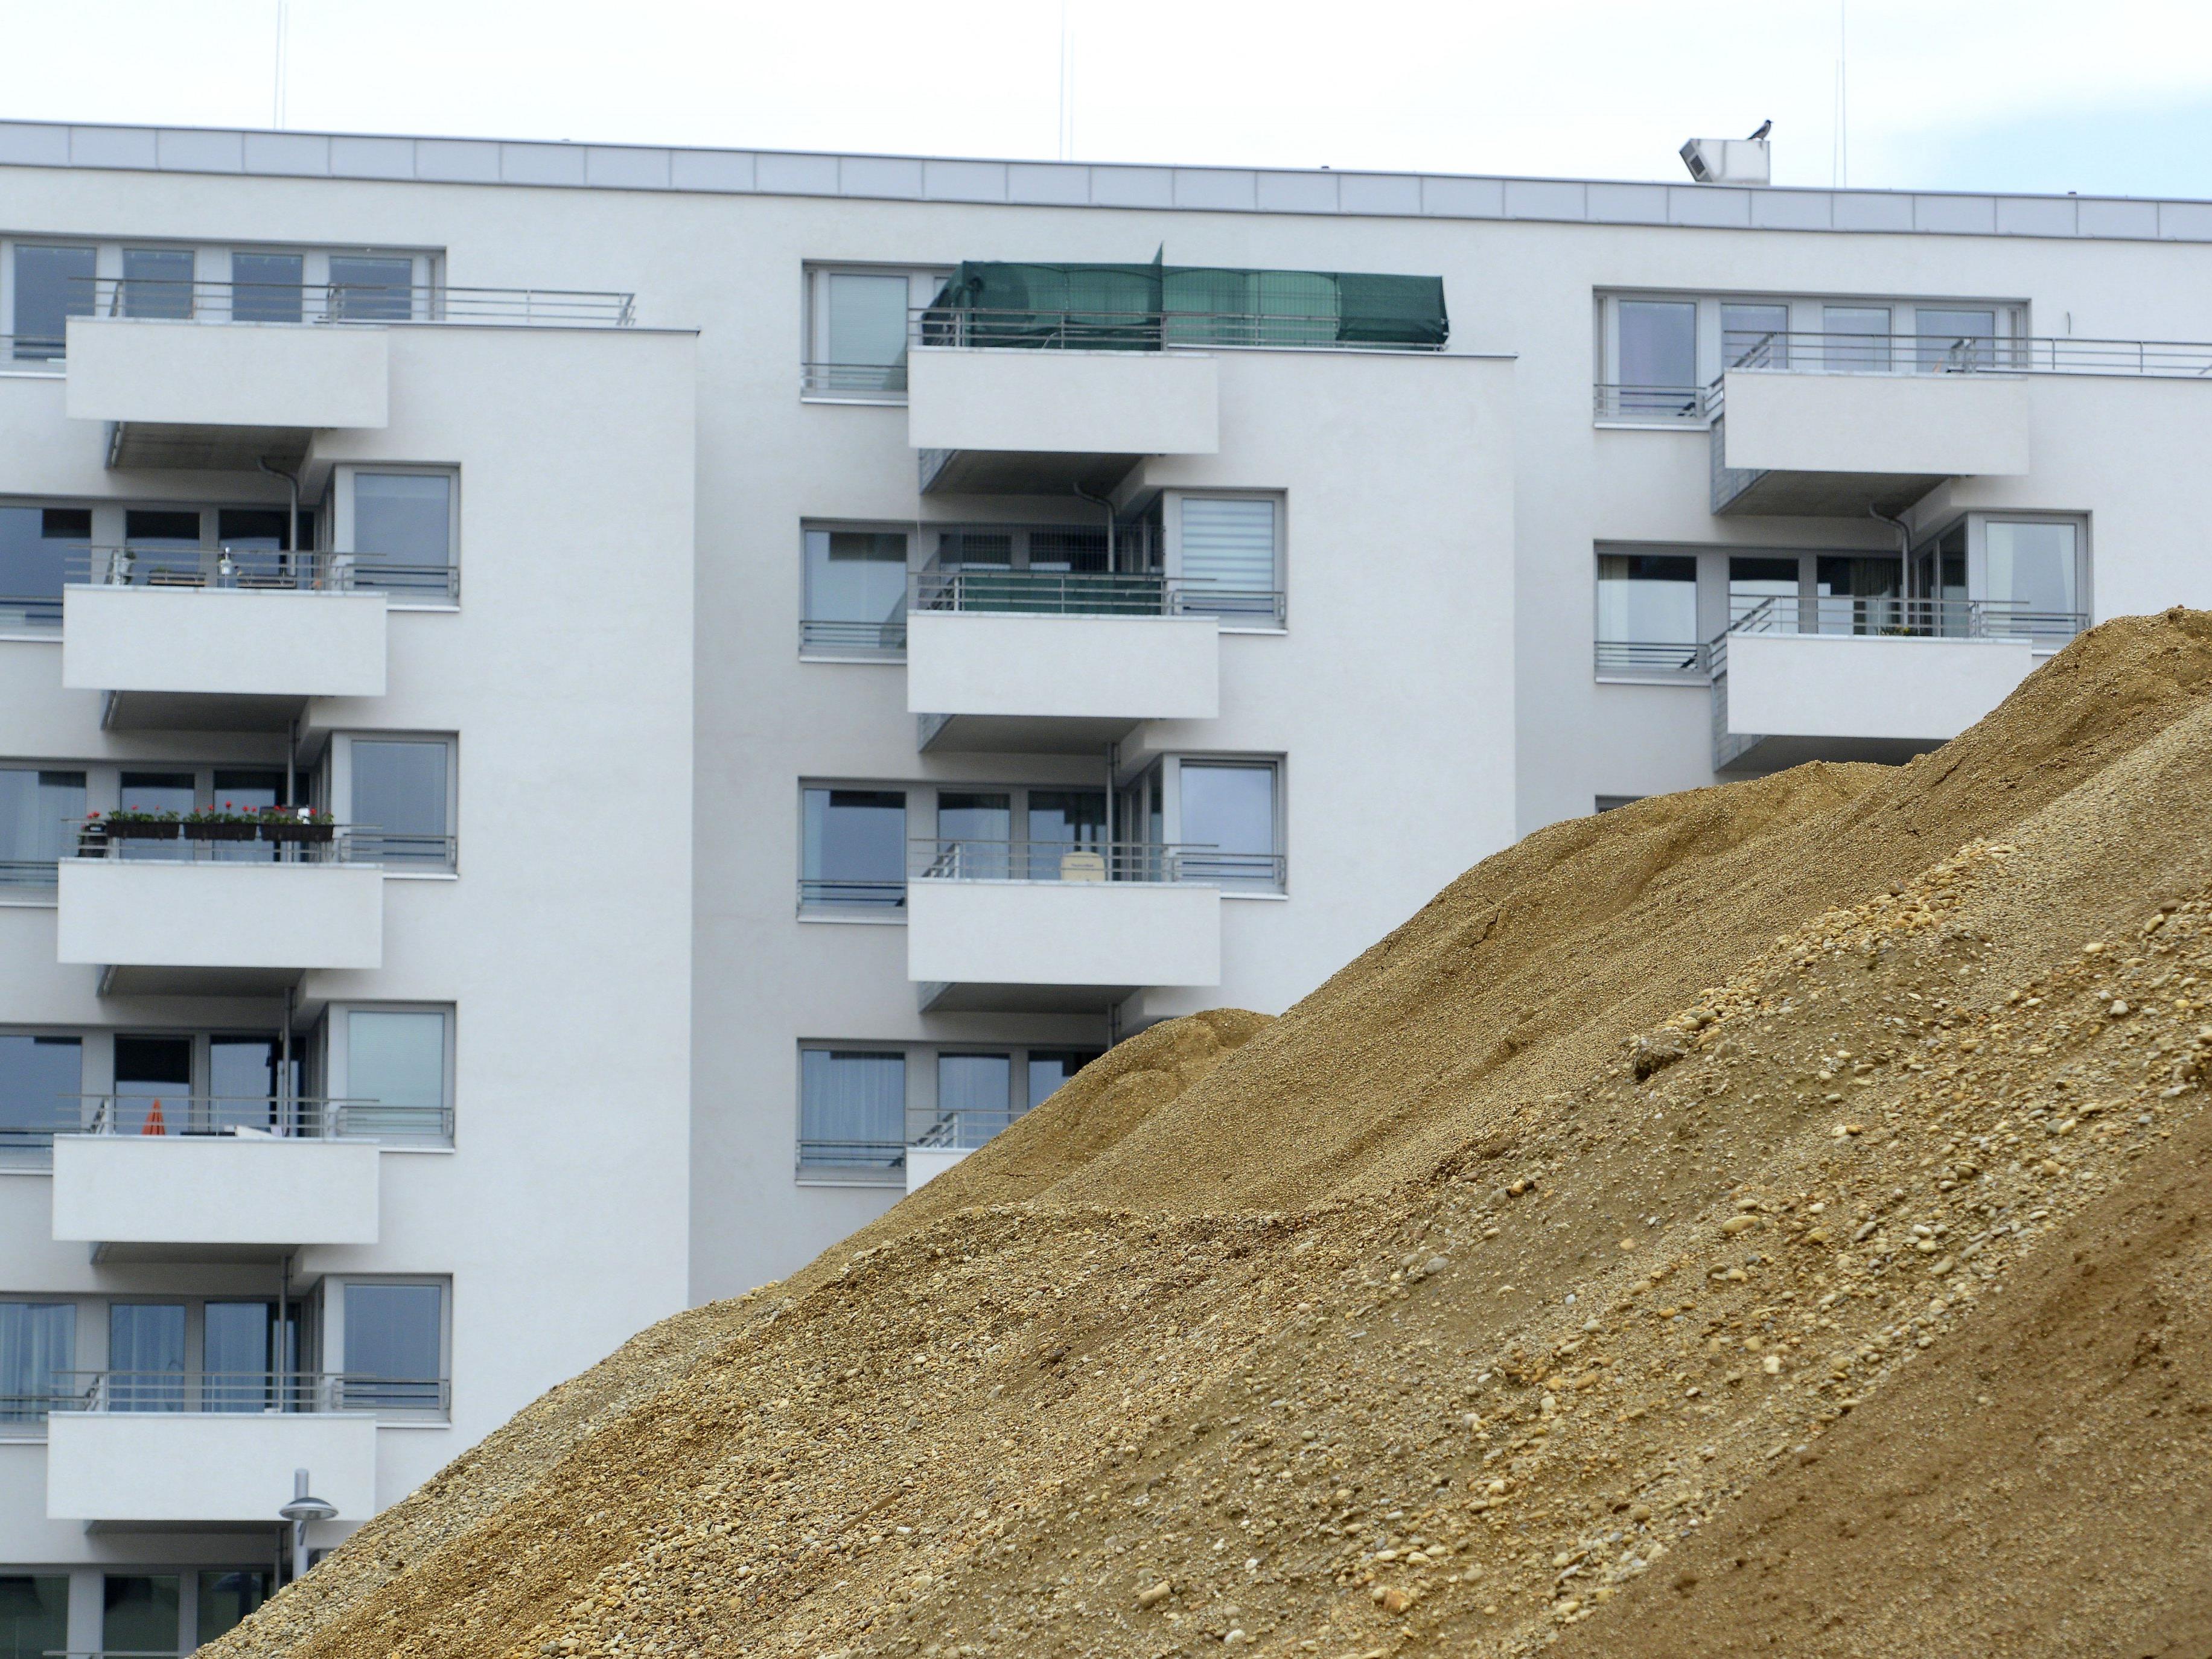 Die Stadt Wien erleichtert angesichts des erhöhten Wohnungsbedarfs durch den Flüchtlingsstrom die Bauvorschriften.